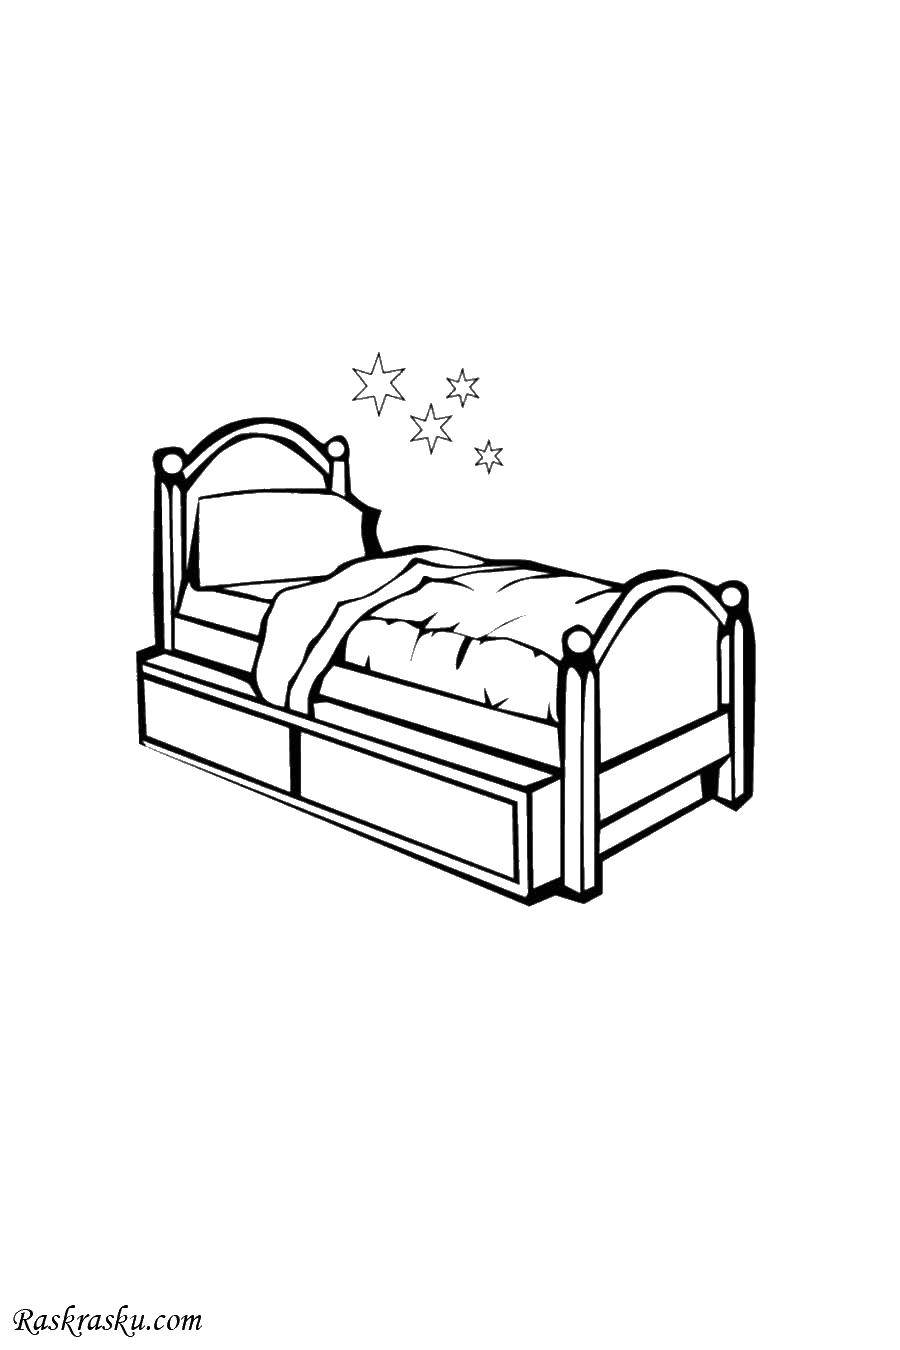 Опис: розмальовки  Ліжко з ковдрою. Категорія: меблі. Теги:  ліжко, ковдра, подушка.